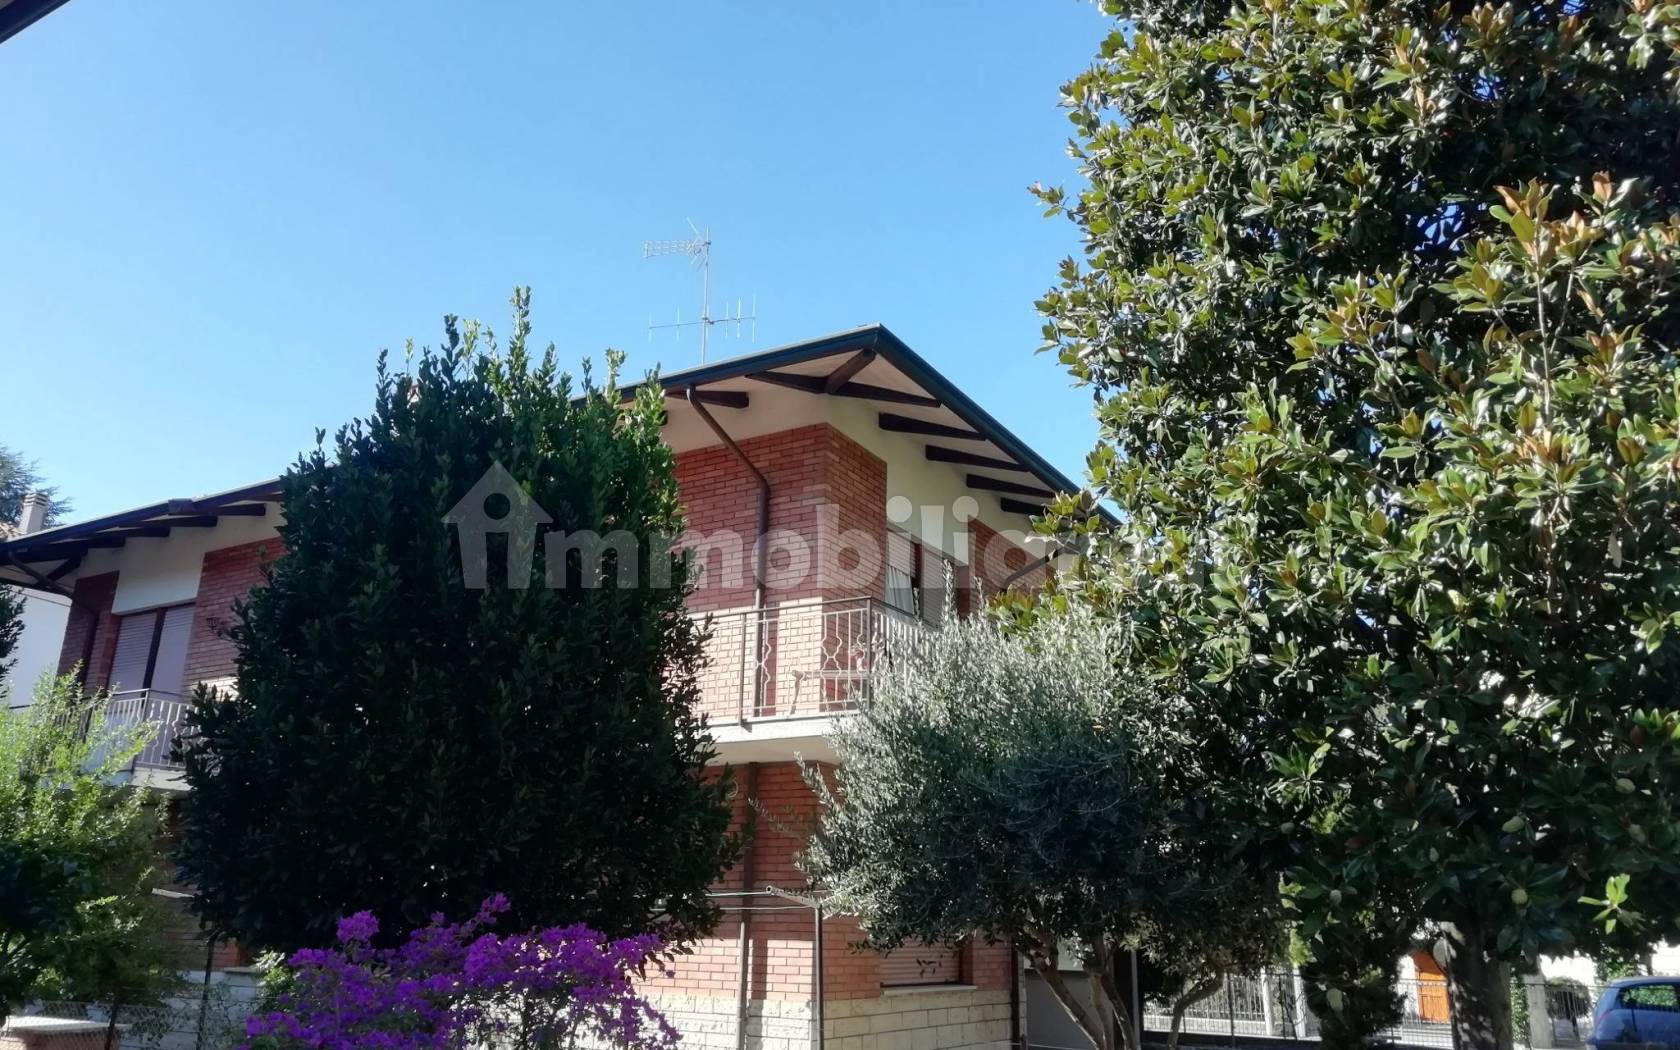 Villa unifamiliare via Ceriana, Diegaro, Cesena